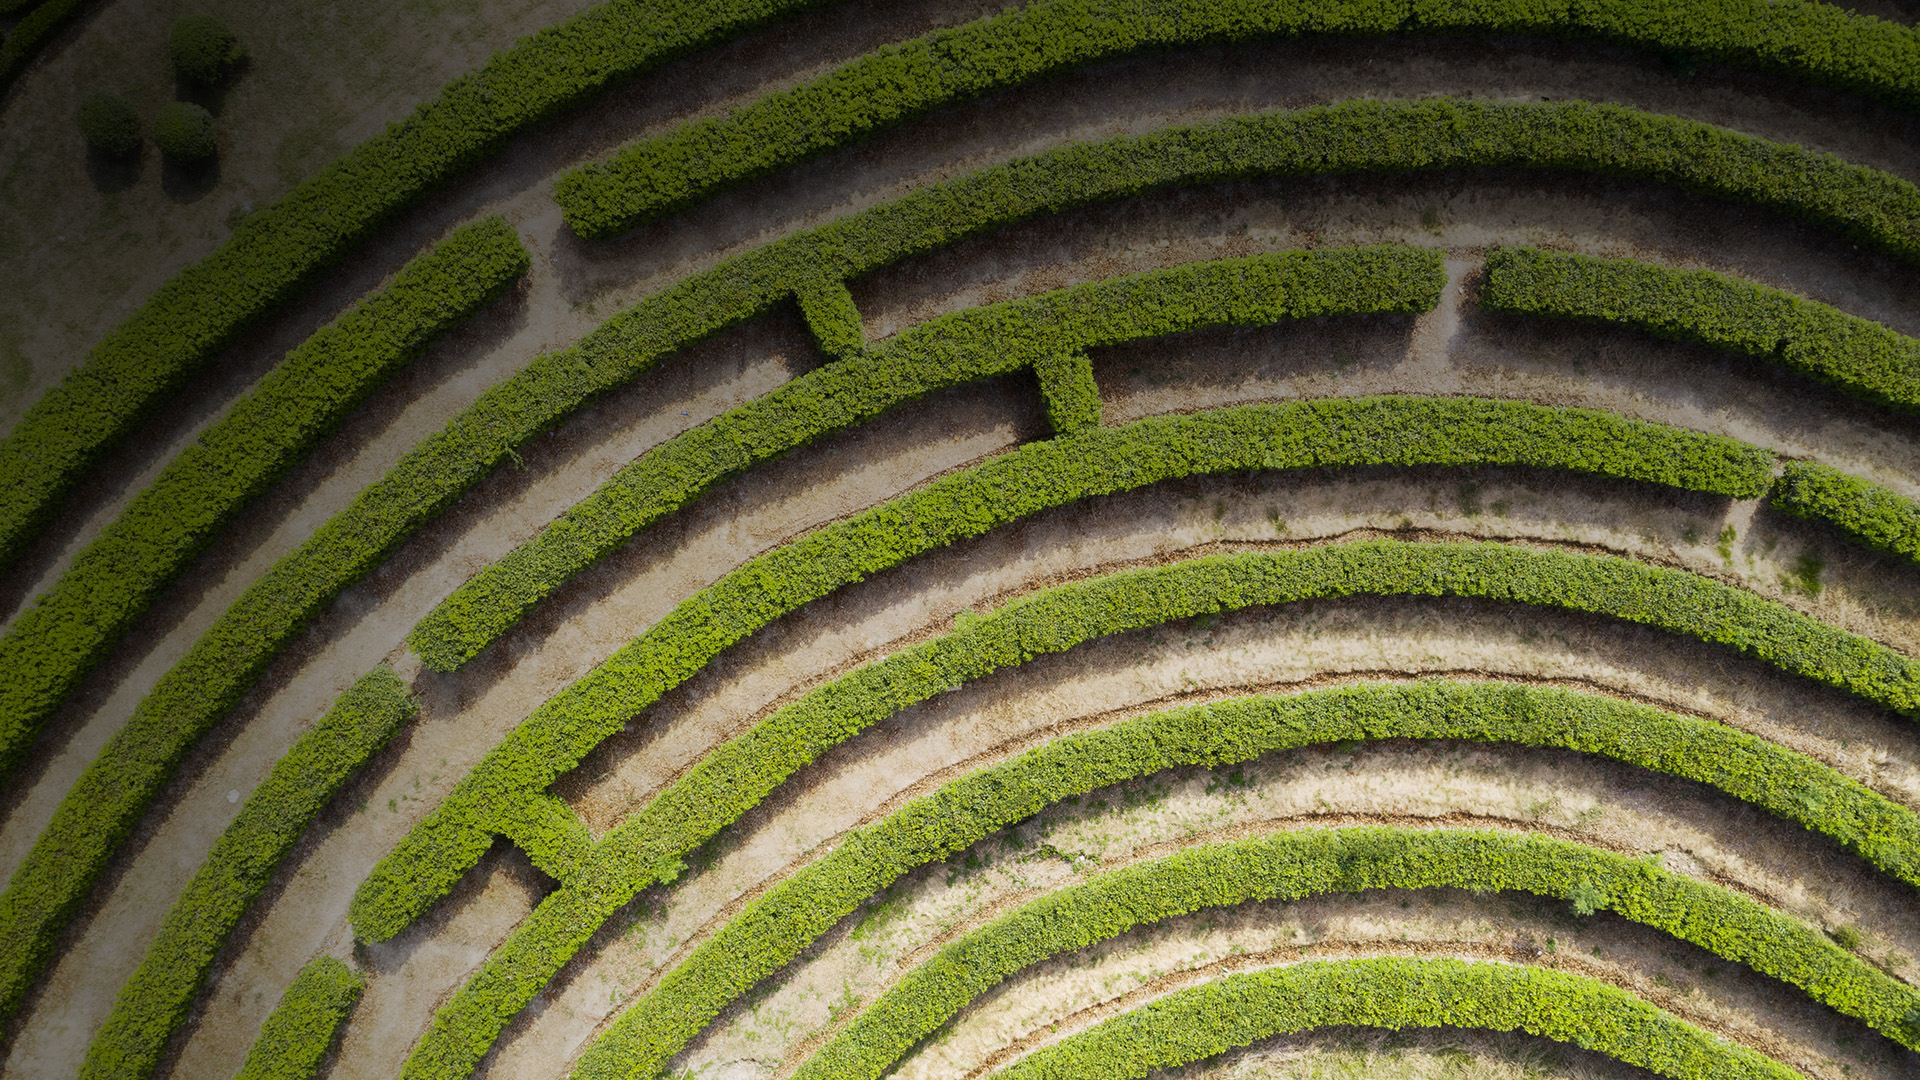 Aerial view of a green maze garden.